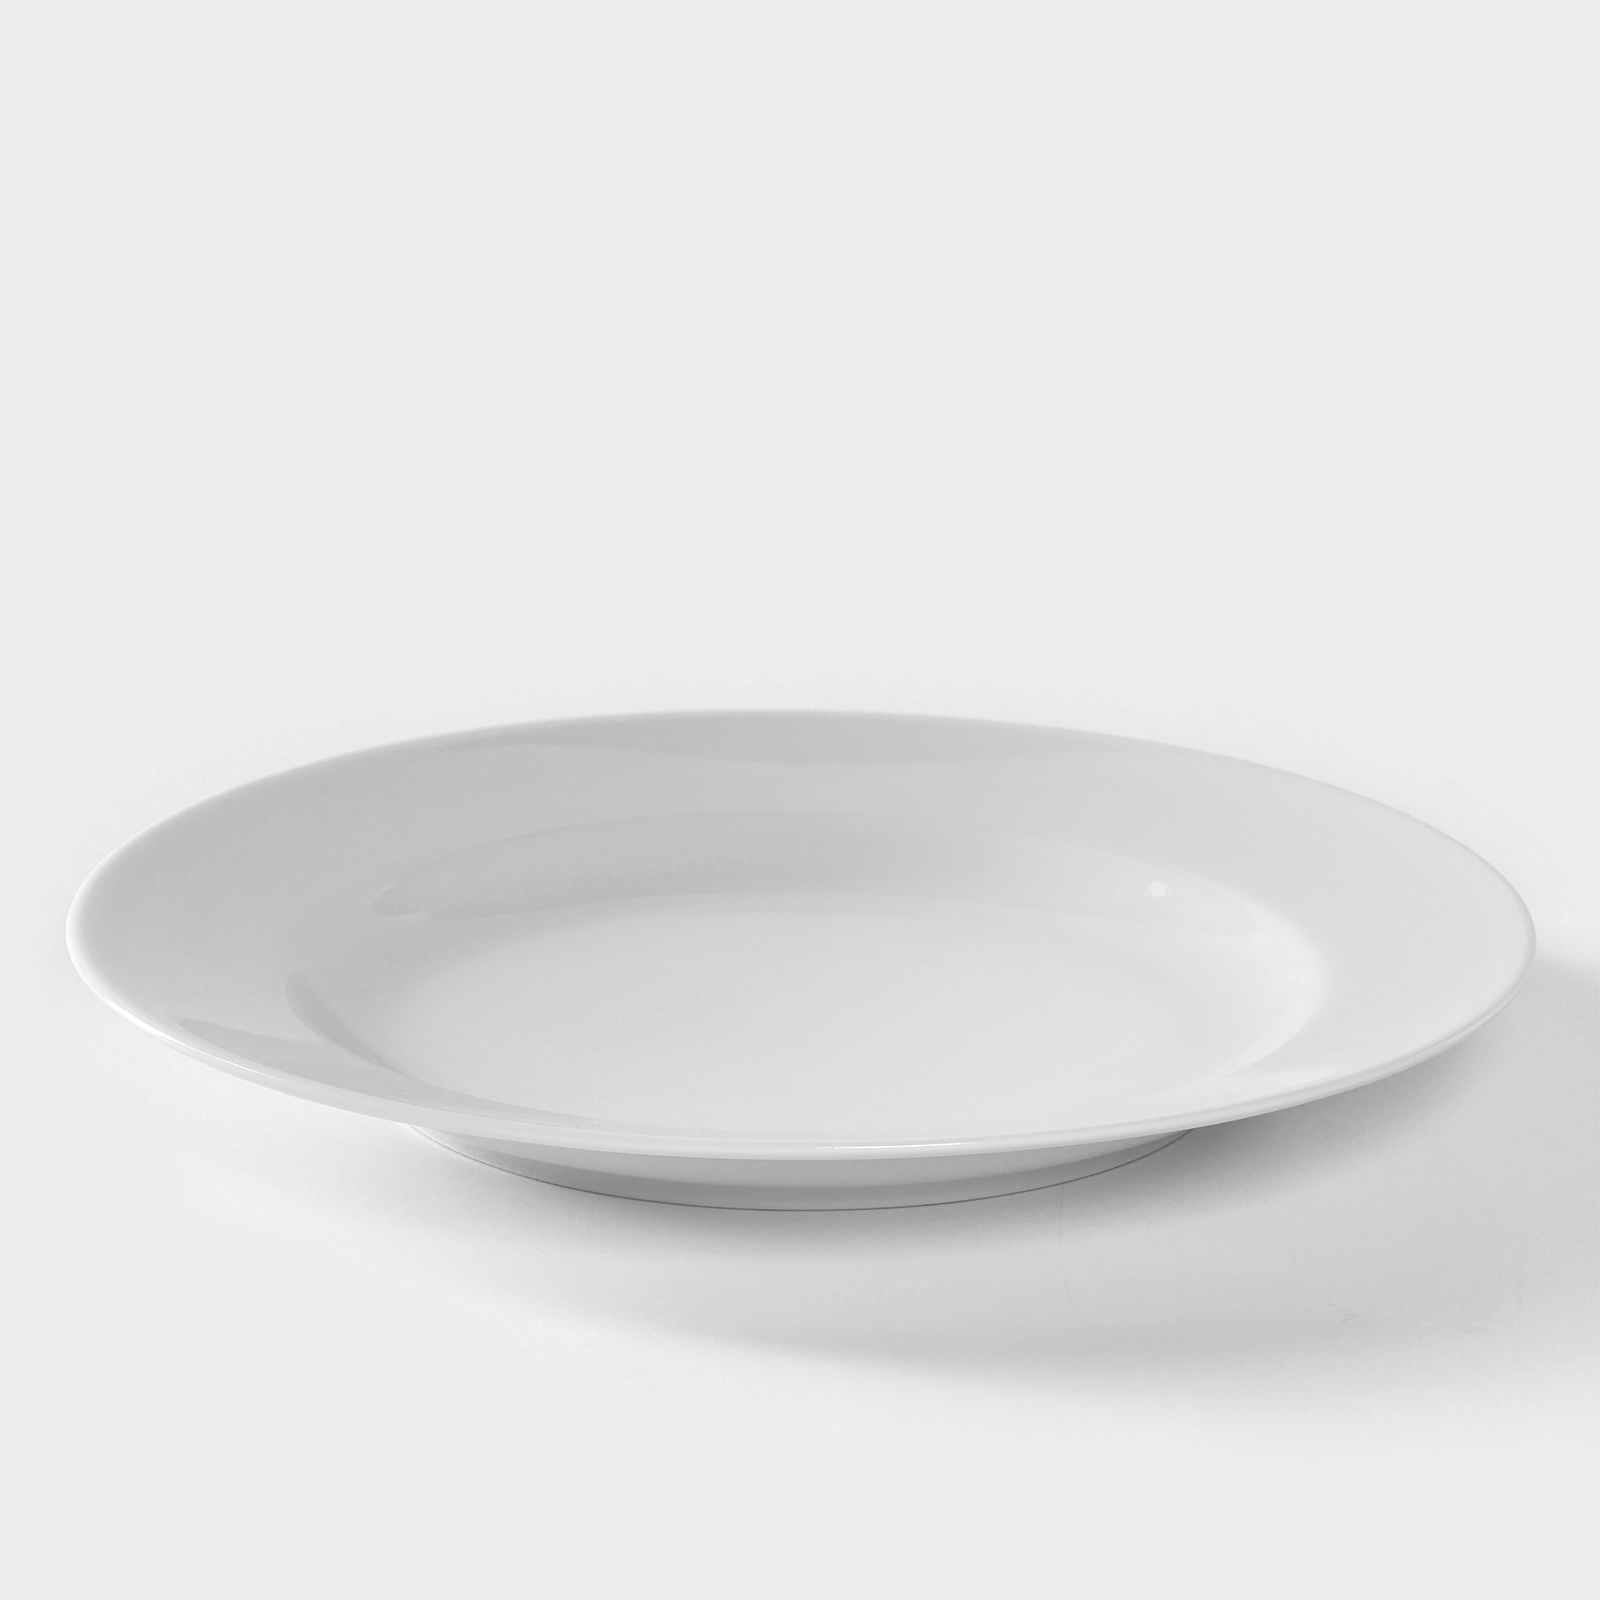 Тарелка фарфоровая «Идиллия», d=24 см, белая